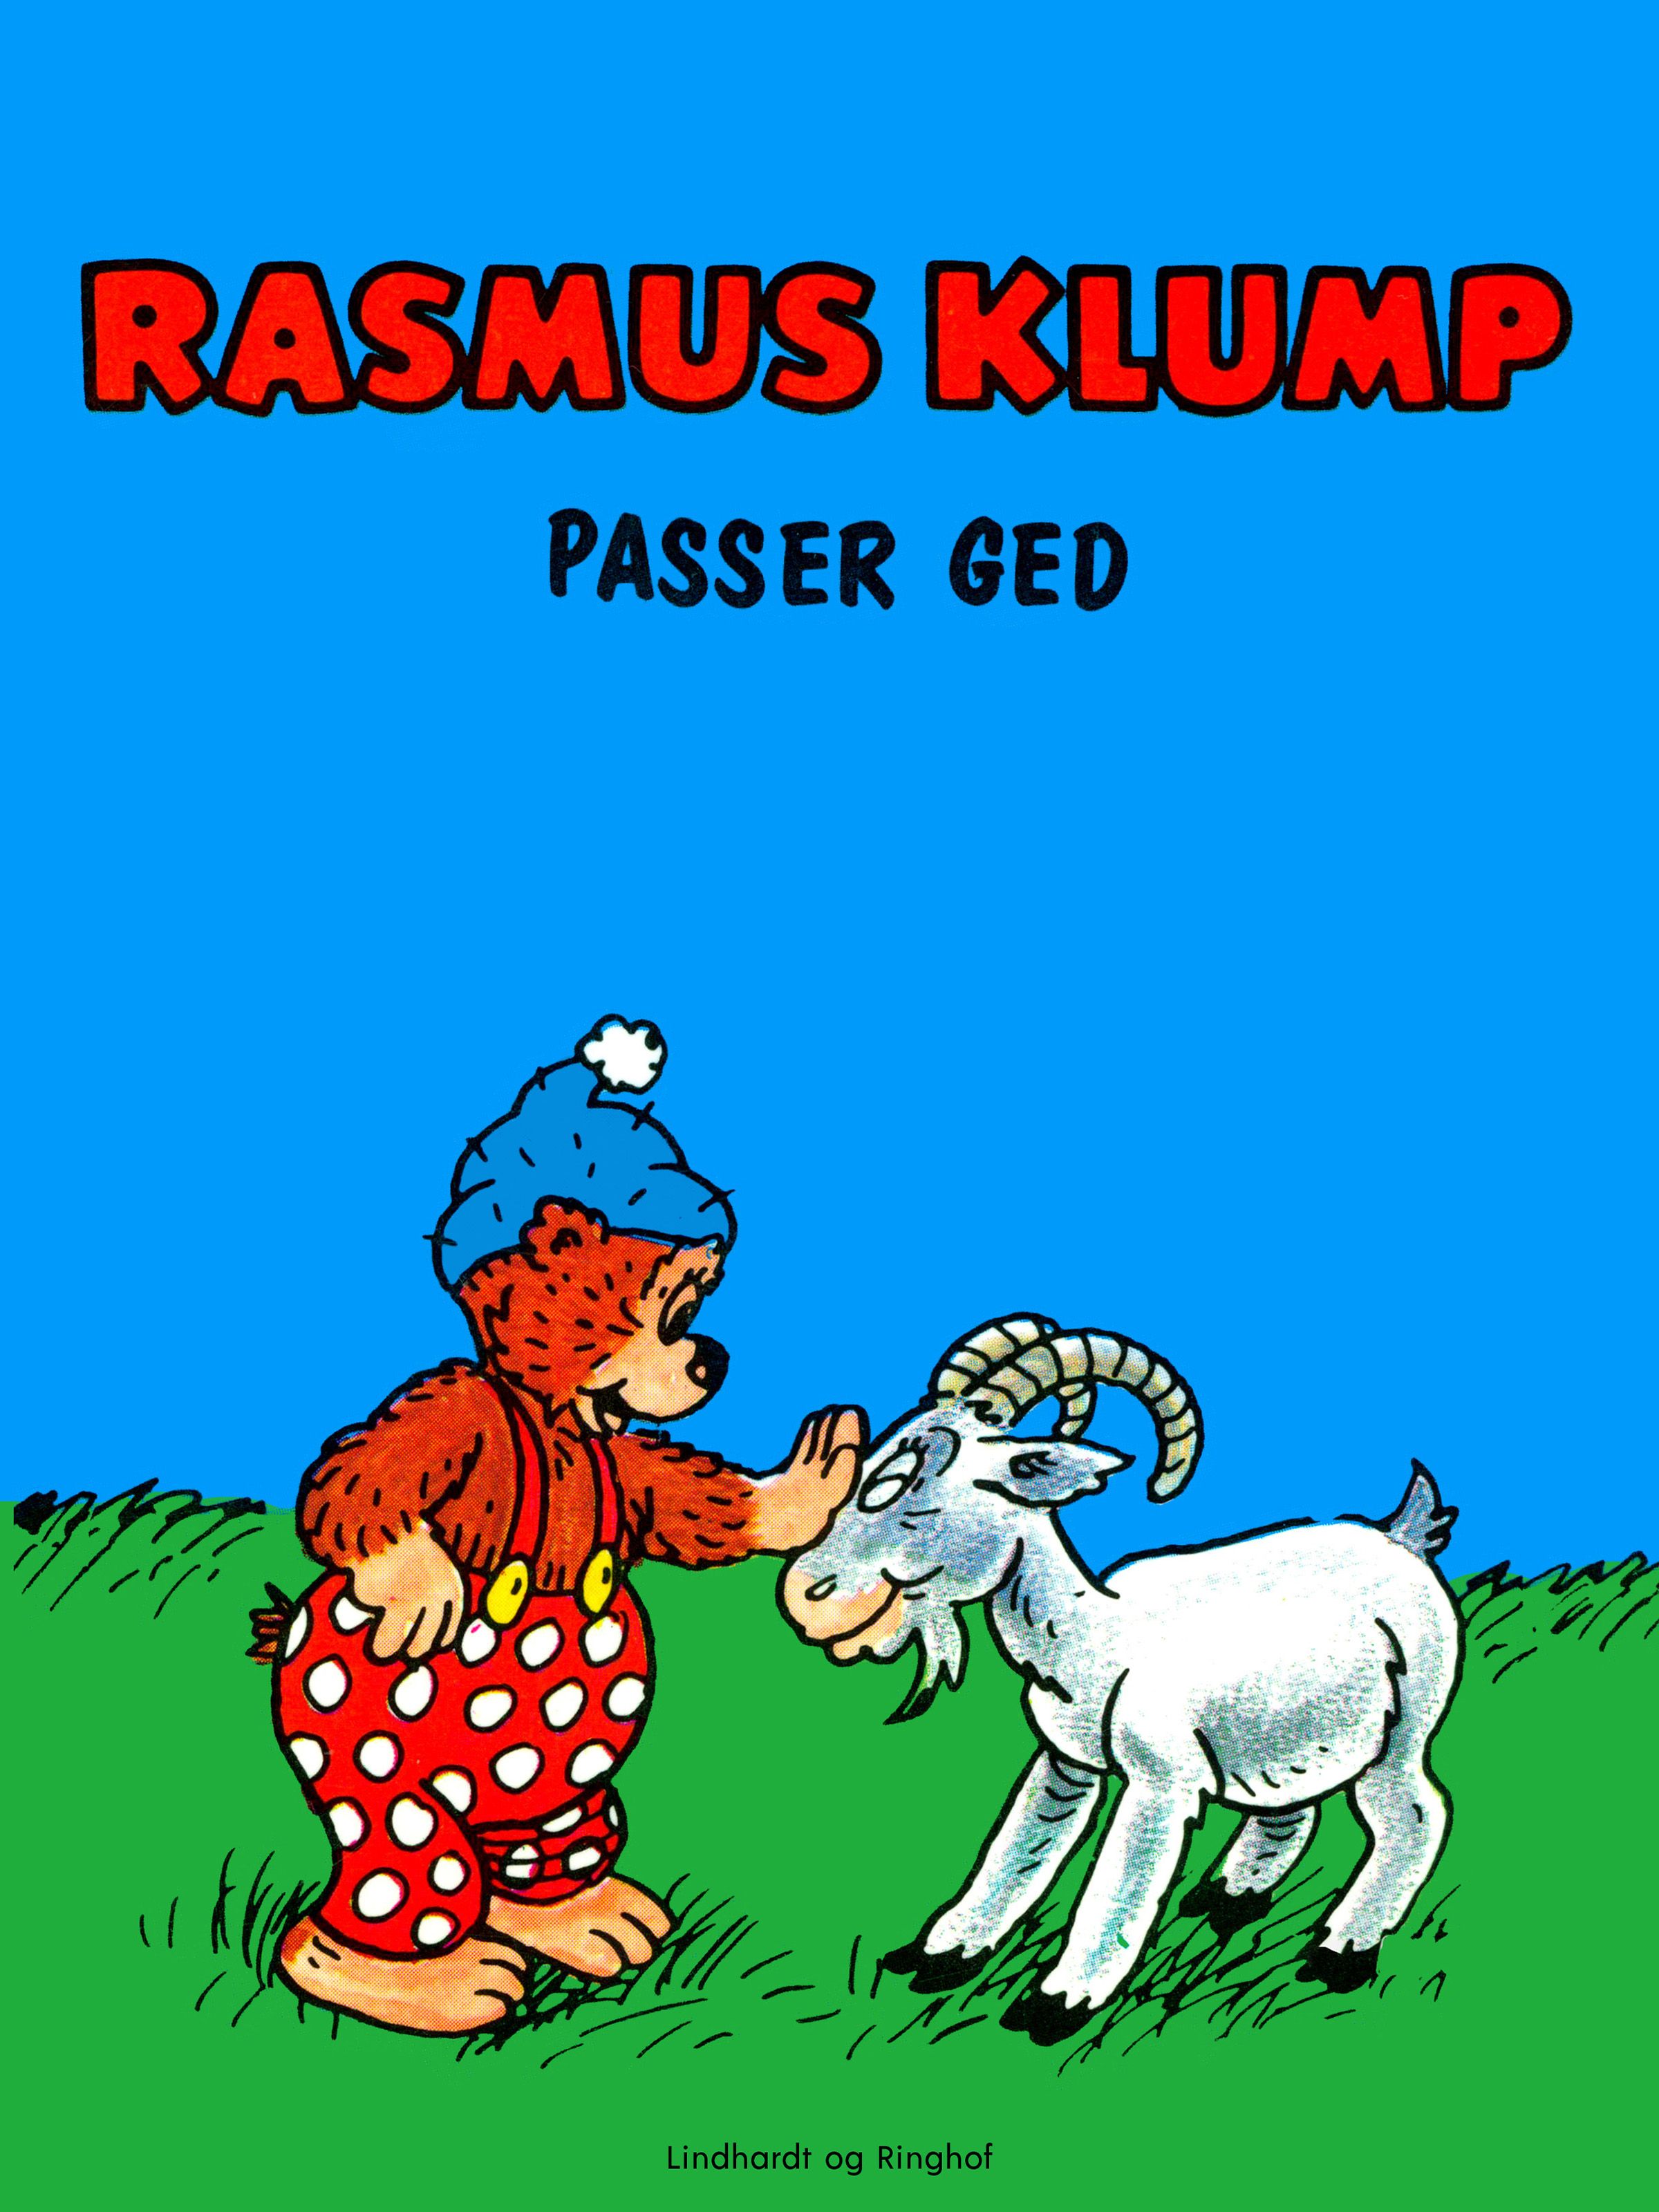 Rasmus Klump passer ged, eBook by Carla Hansen, Vilhelm Hansen